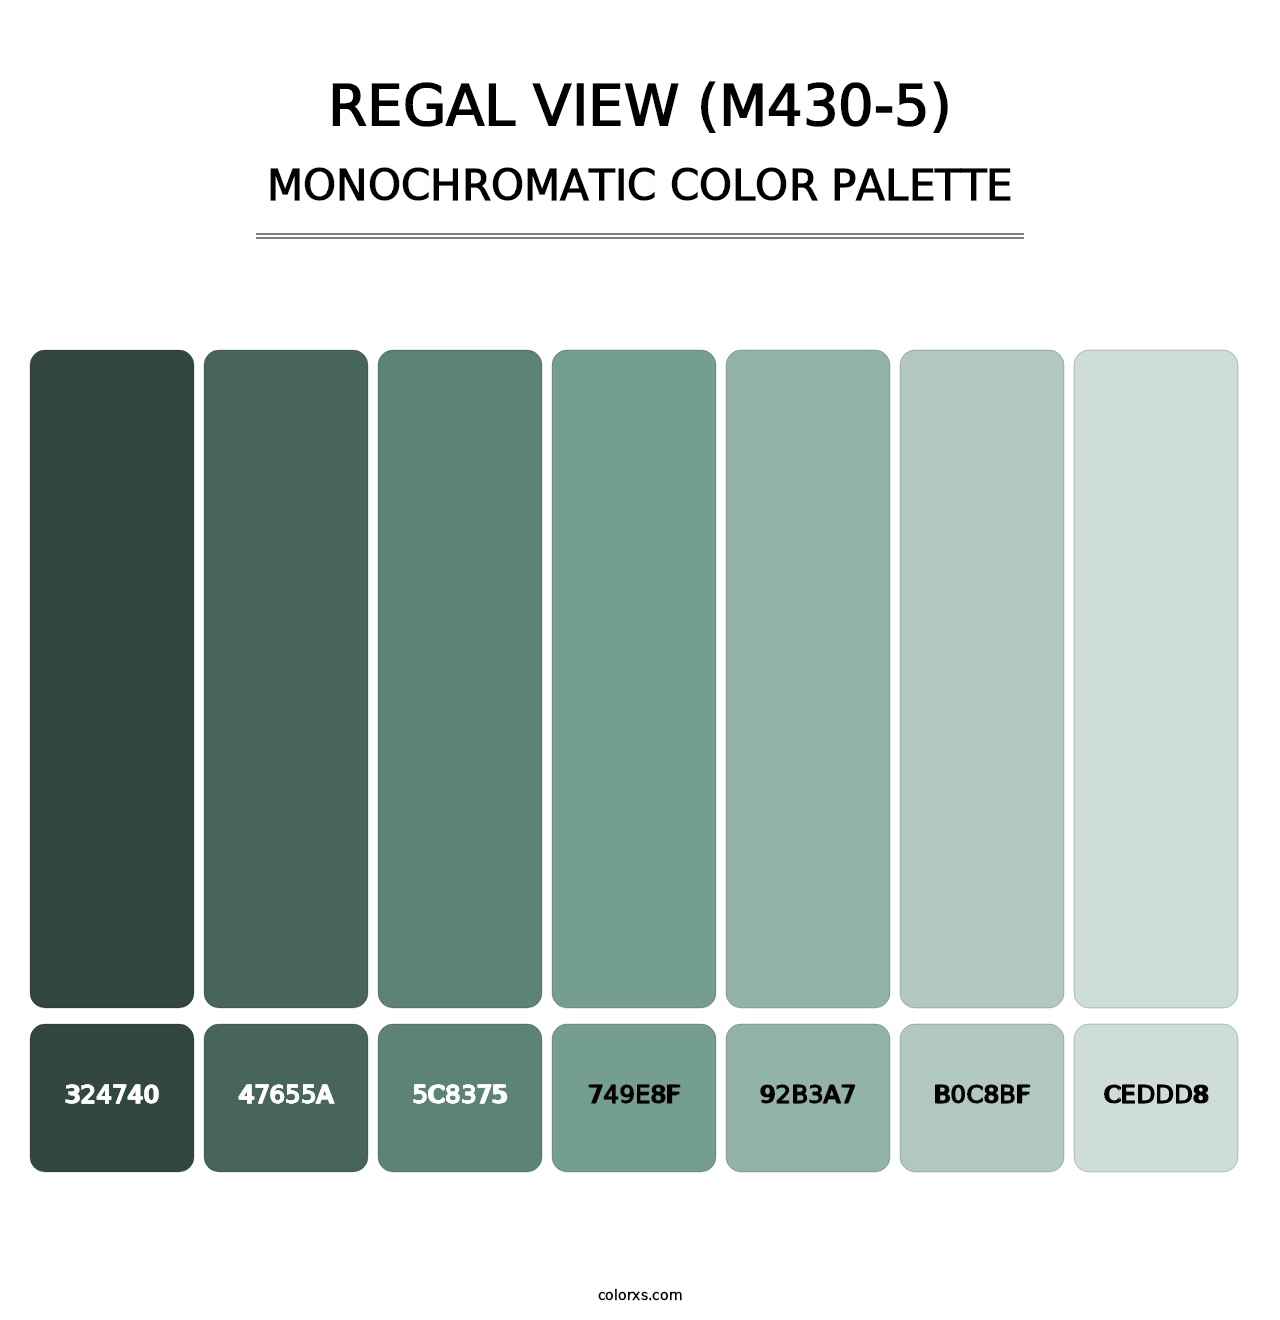 Regal View (M430-5) - Monochromatic Color Palette